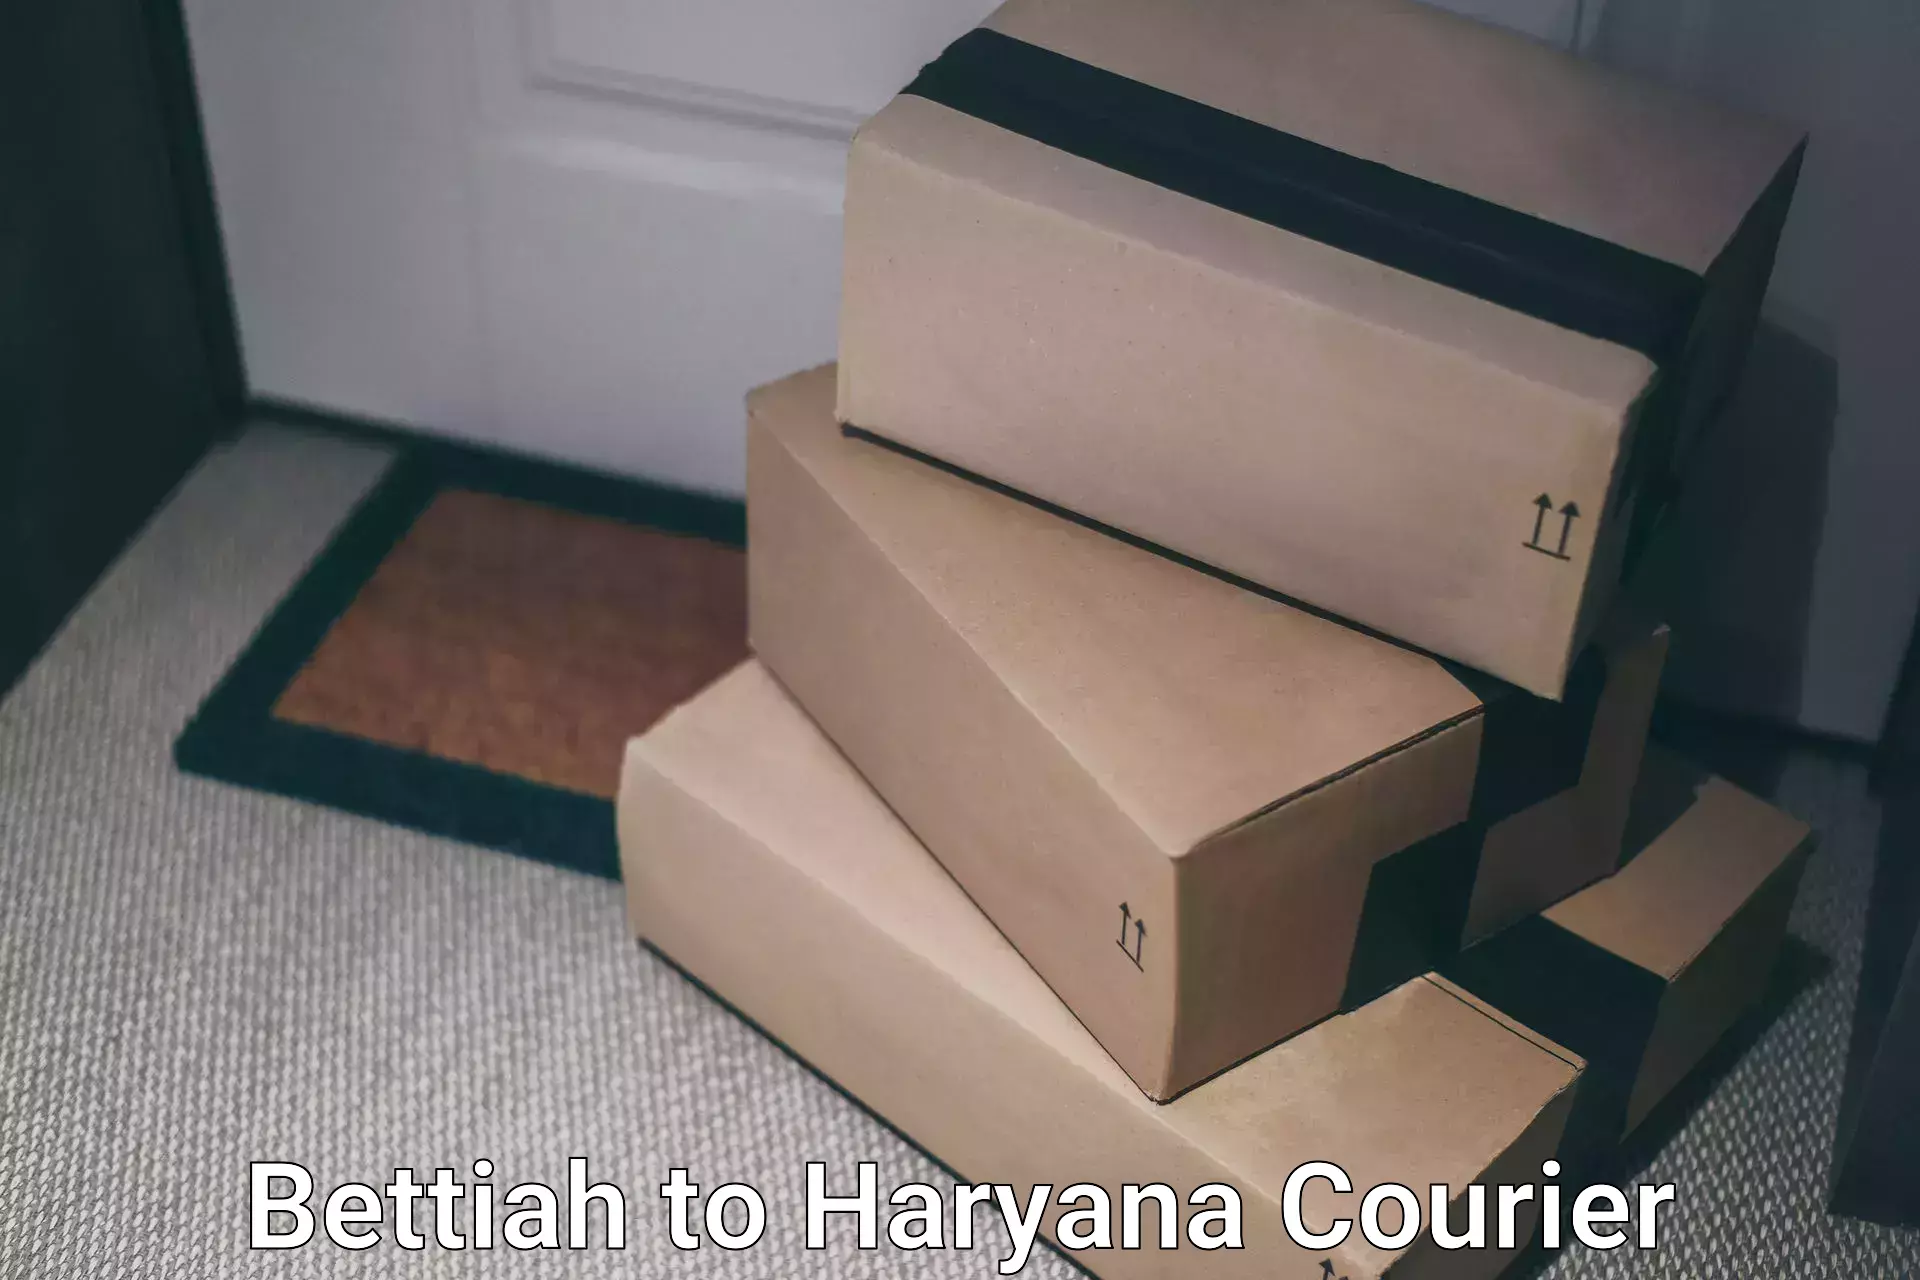 Efficient parcel service Bettiah to Assandh